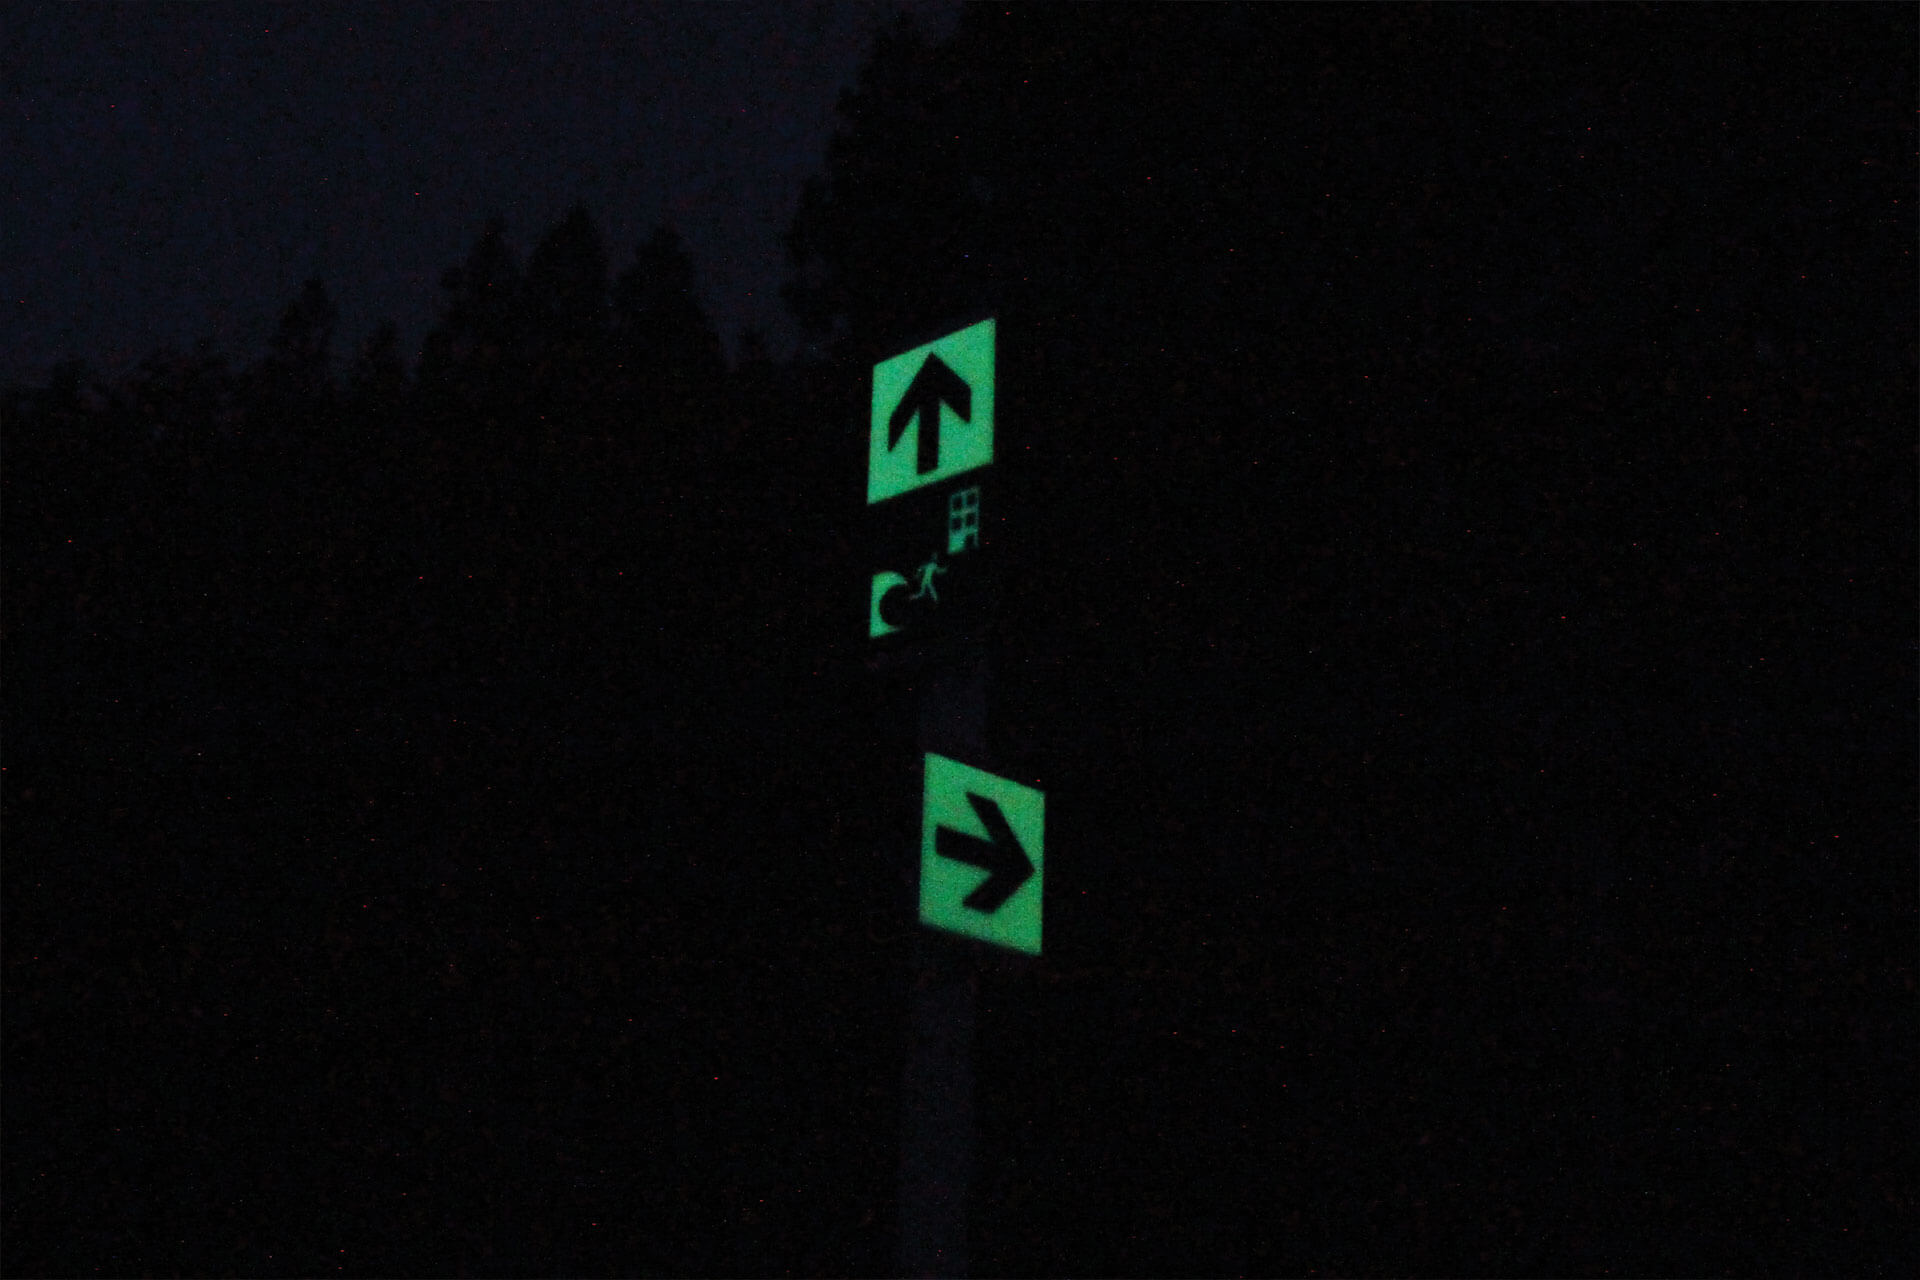 暗視下の津波避難所へ誘導する矢印と津波避難標識が標示されたハイブリッドストーン アベイラスサインプレート（高輝度蓄光式屋外用案内標示板）